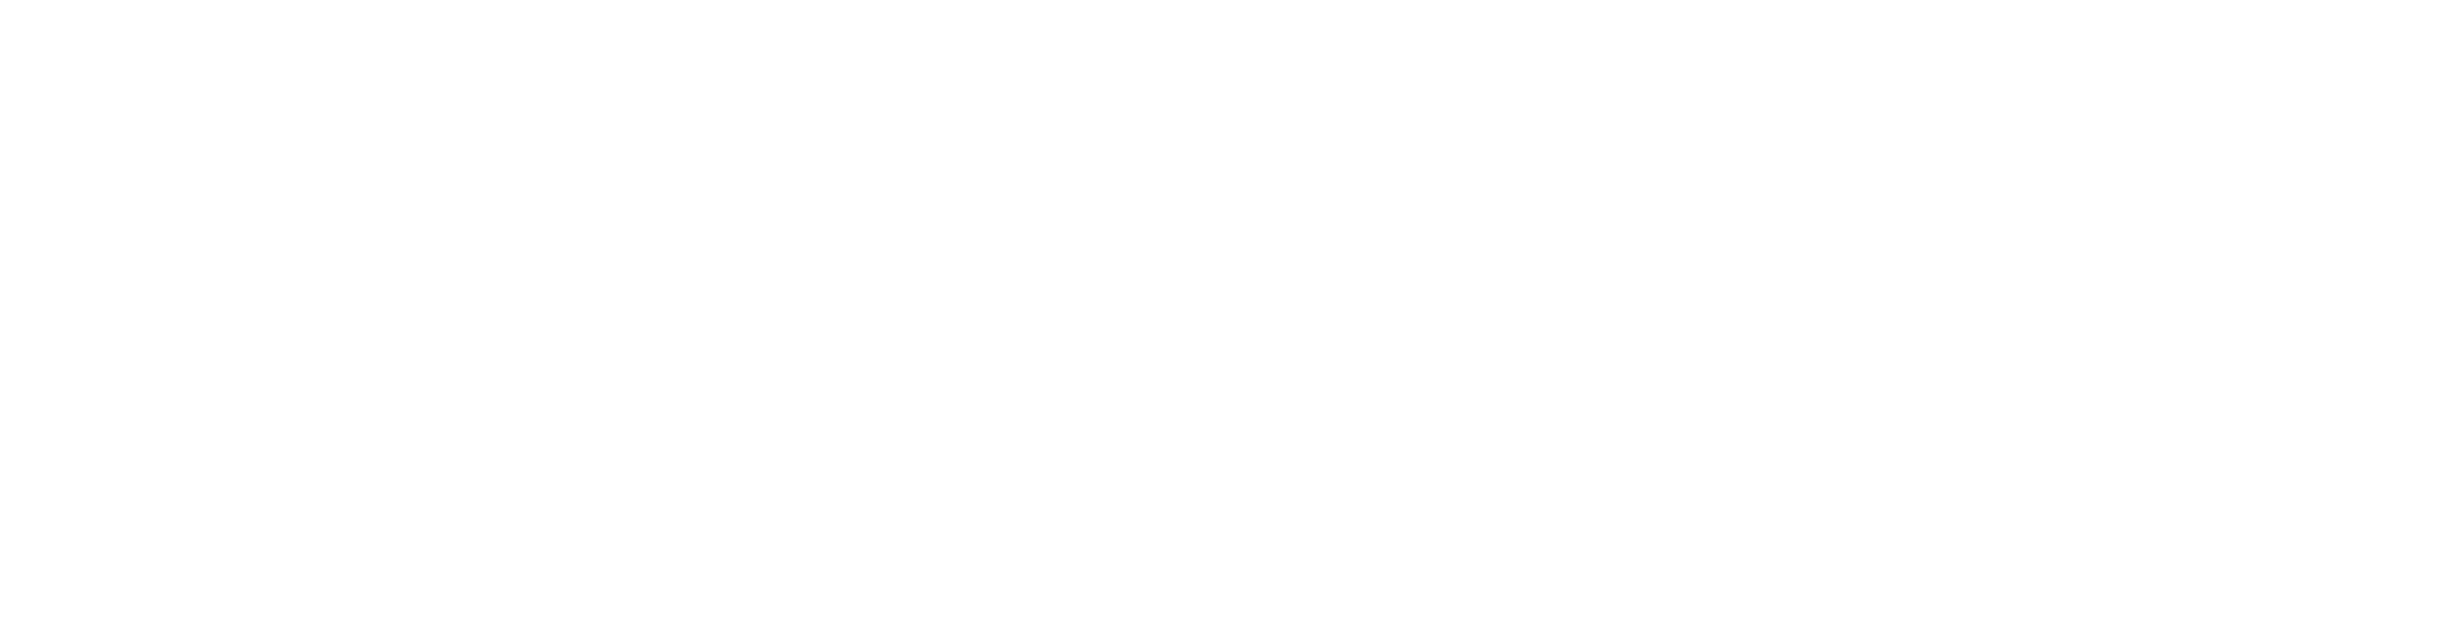 peets-logo-white